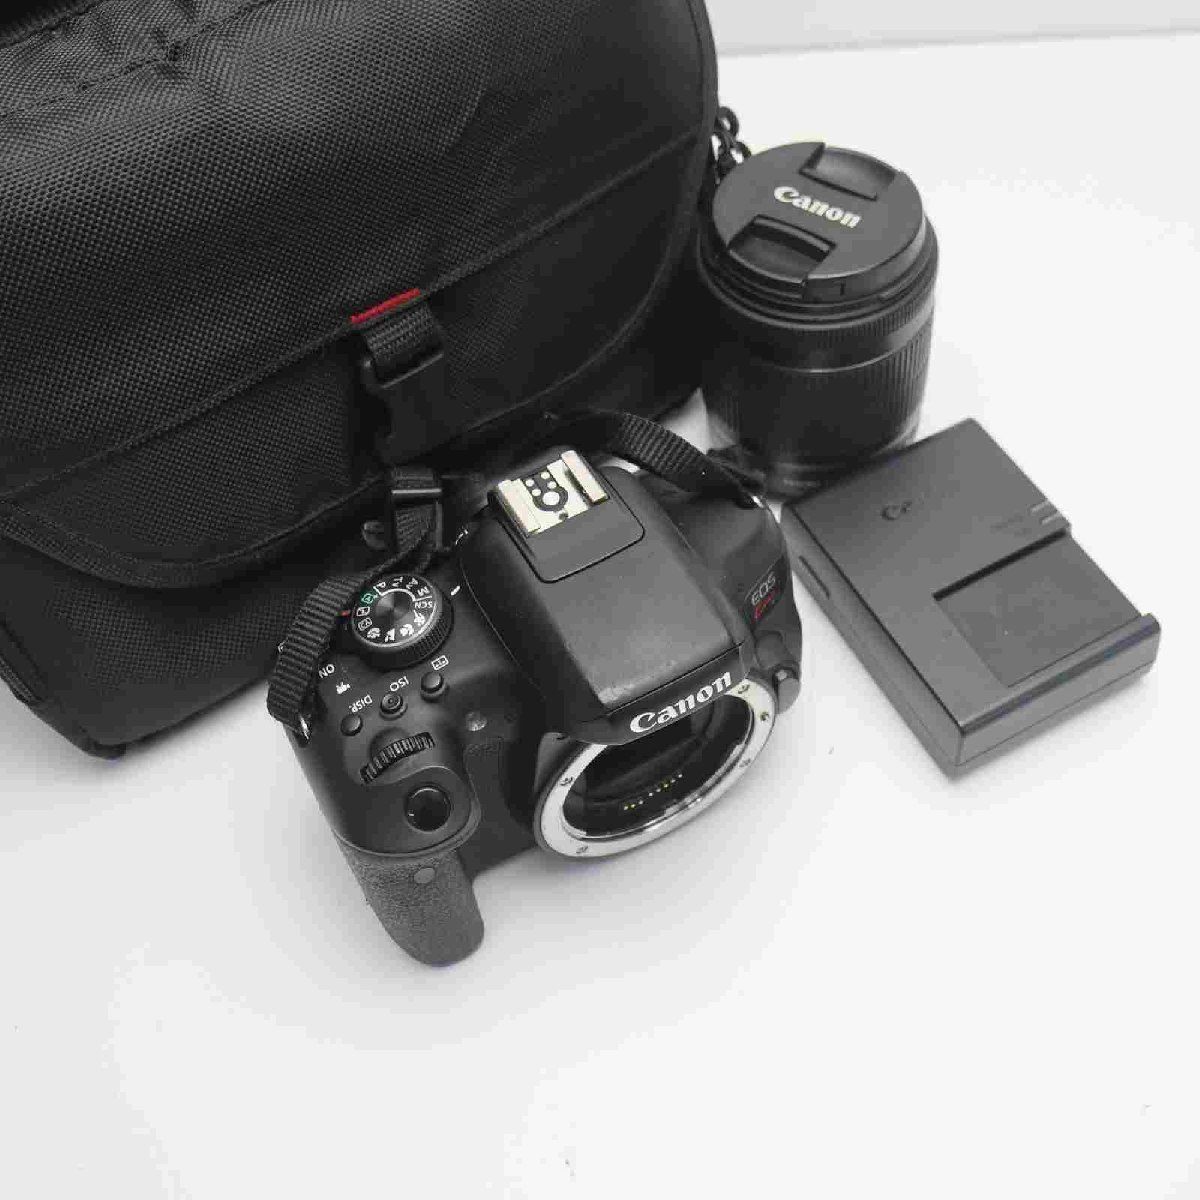 即日発送 Canon EOS Kiss x8i 一眼レフカメラ